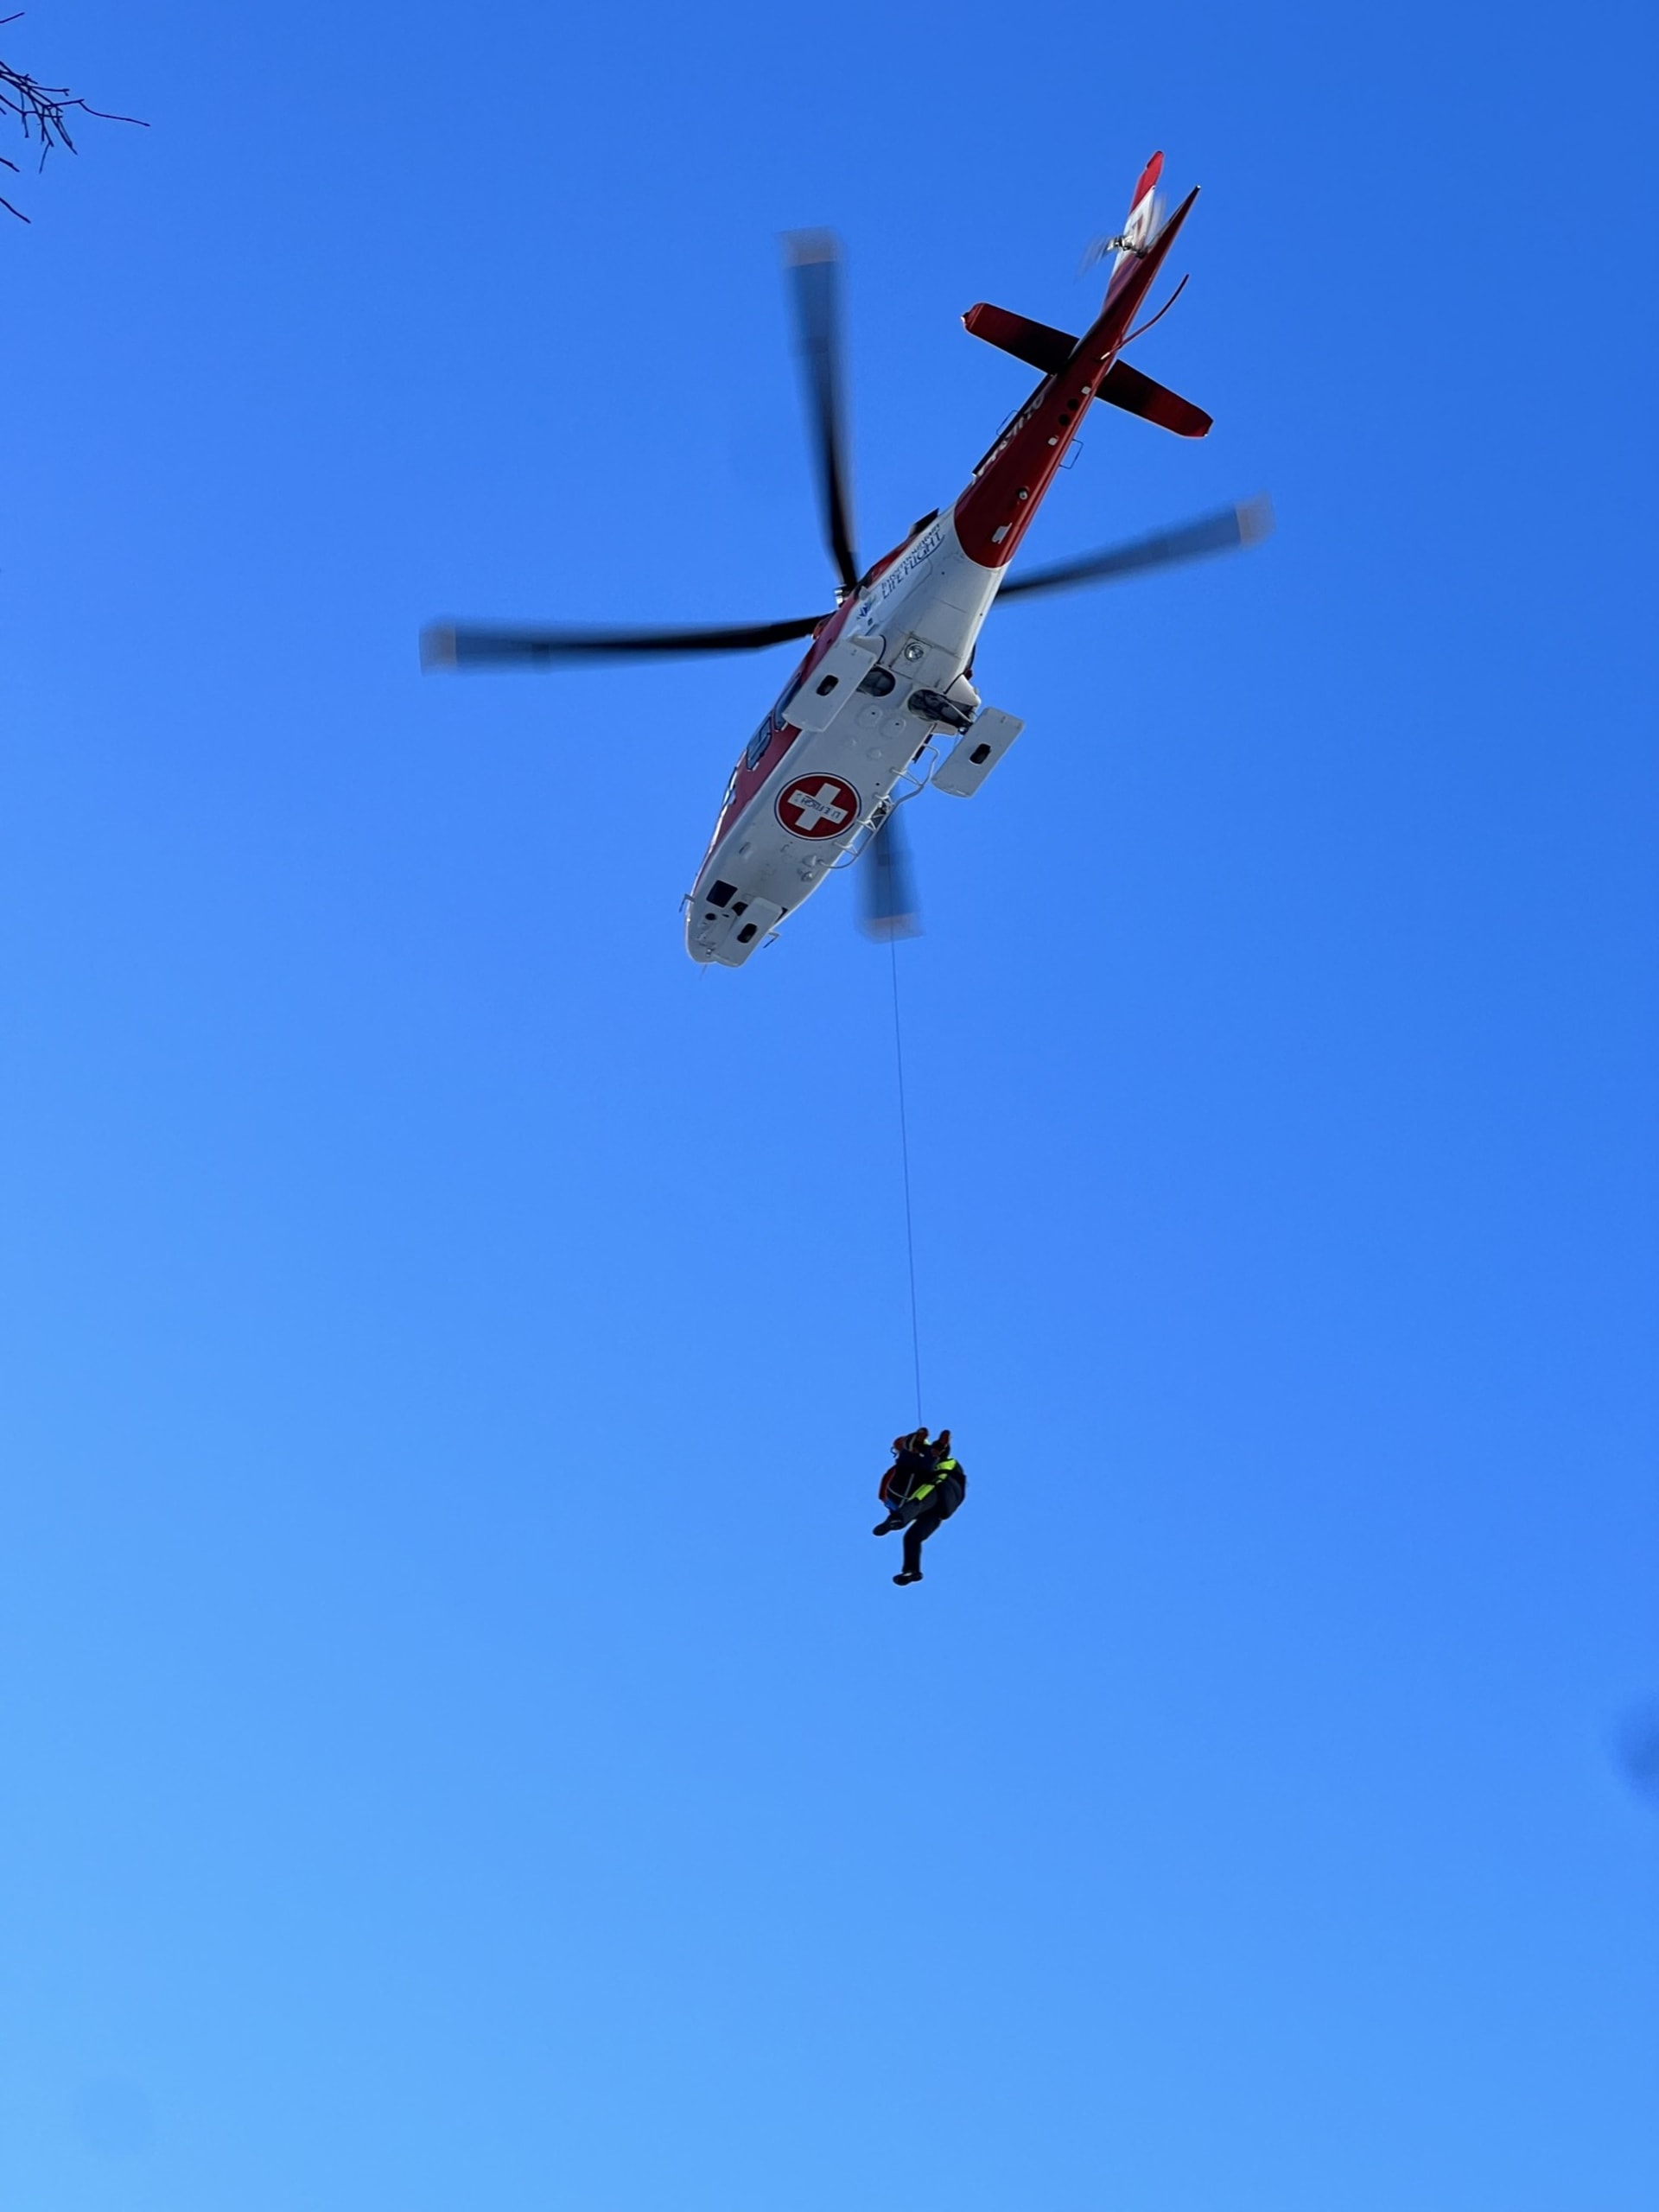 Poraněného horolezce přepravil do nemocnice vrtulník.